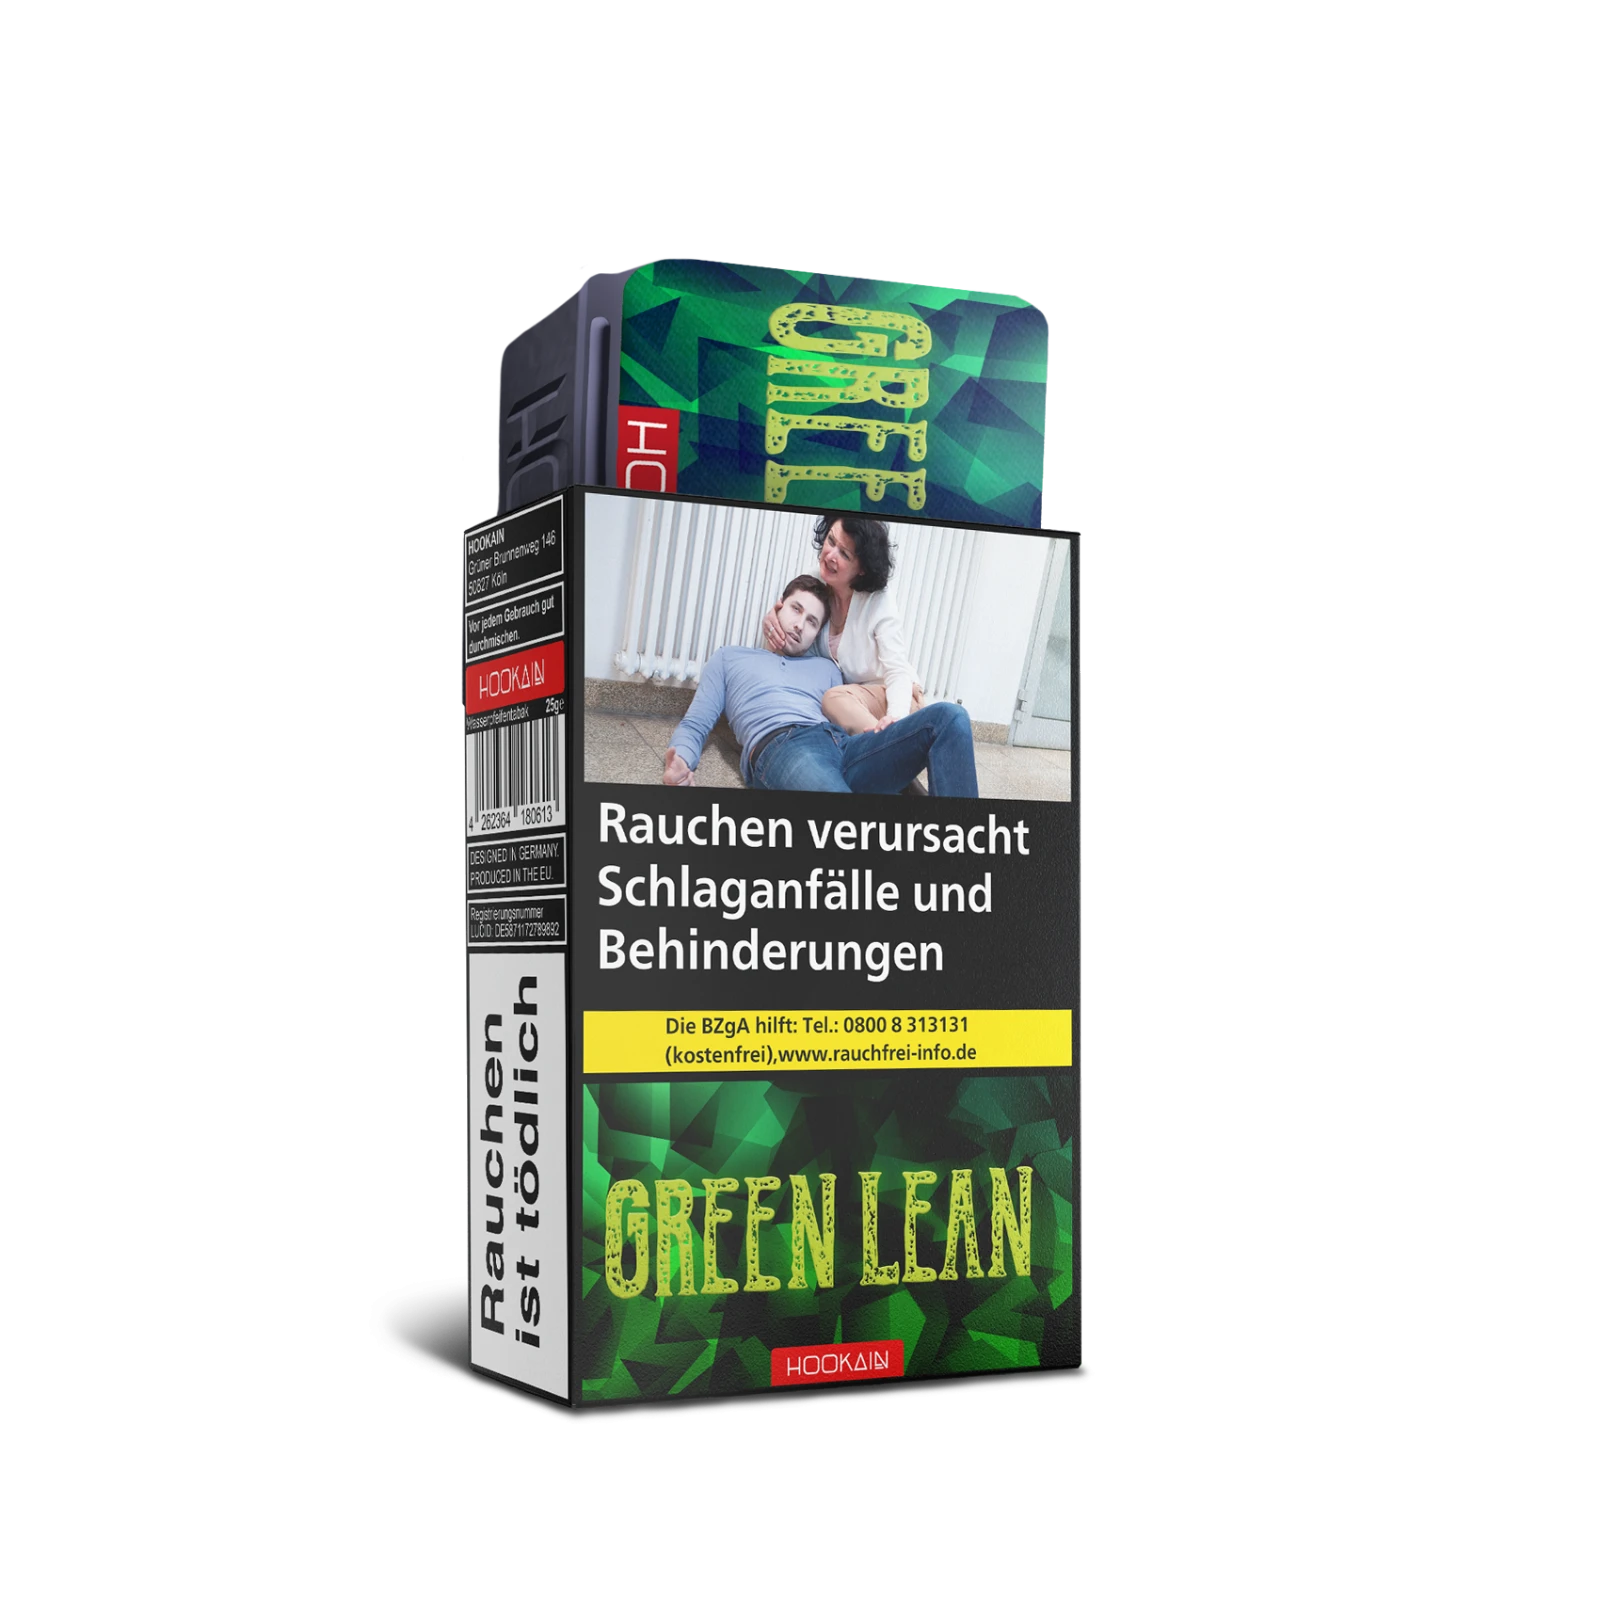 Hookain - Green Lean - 25 g